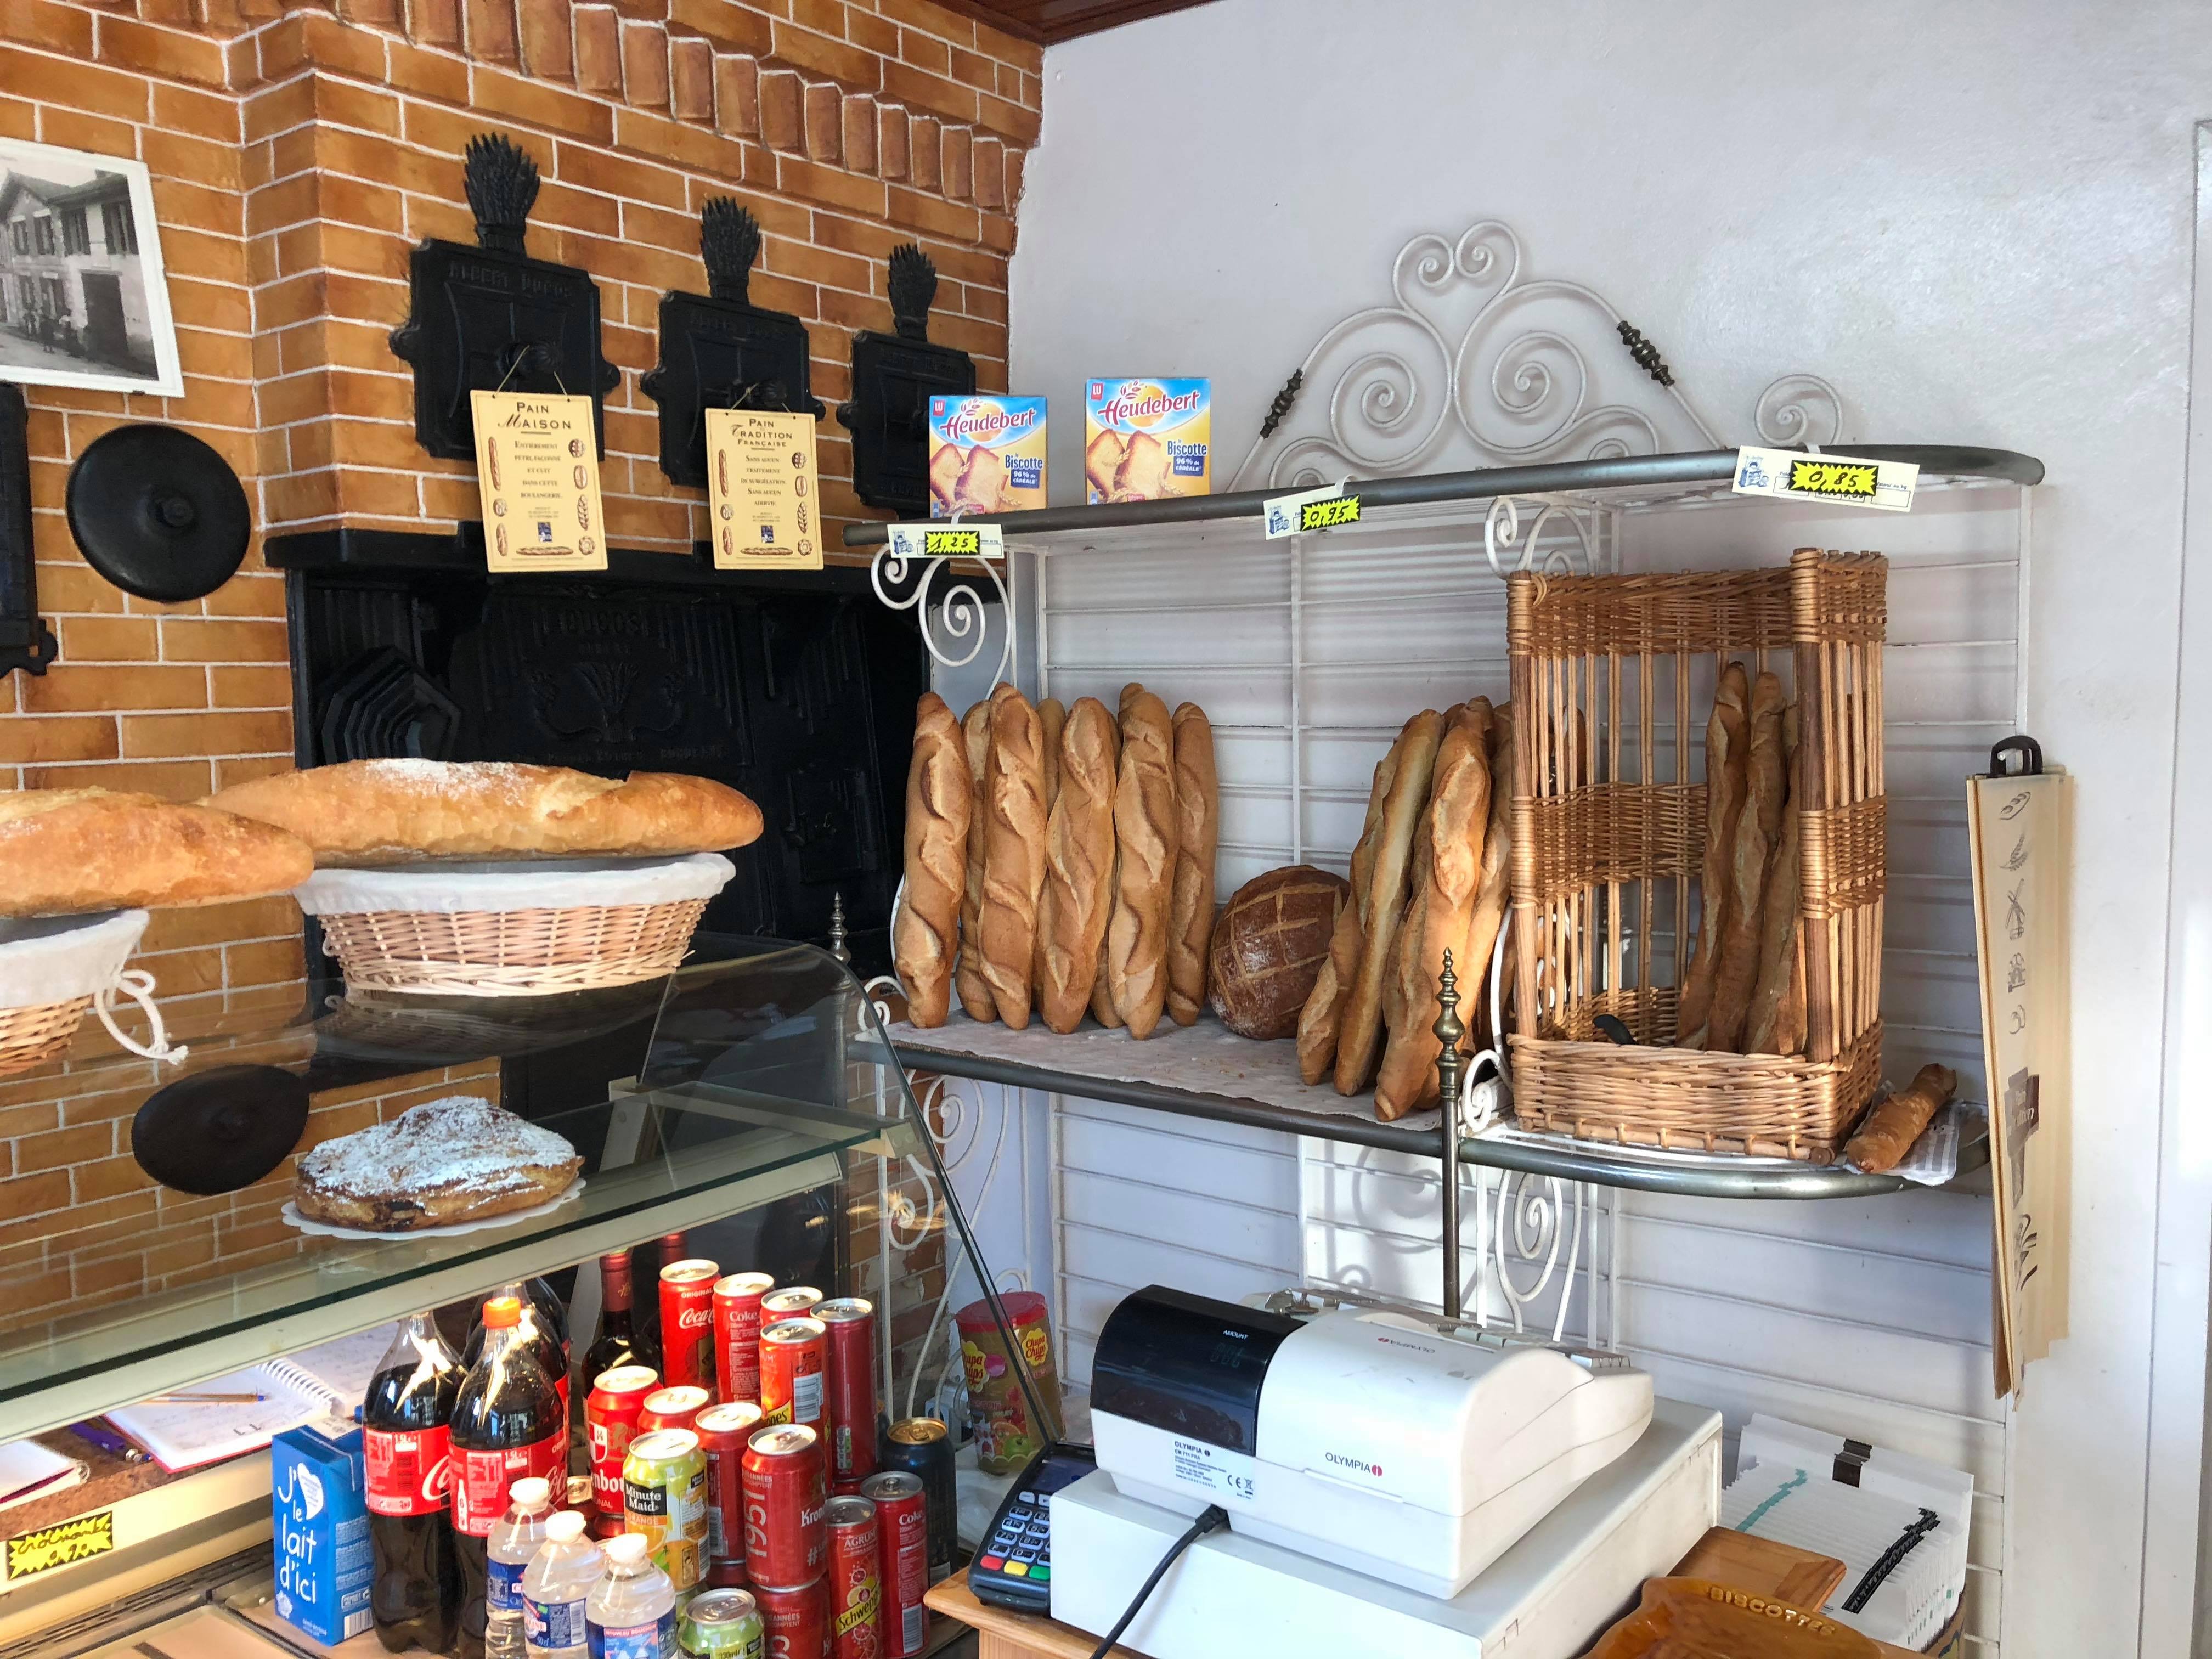 A vendre pour cause de départ en retraite fond de commerce boulangerie artisanale avec licence Tabac. 

L'activité de la boulangerie se fait au magasin mais également en livraison avec des dépôts de pain, des écoles, des maisons de retraite et également chez des particuliers.

Possibilité d'avoir la Française des jeux ou de faire relais colis. 
Possibilité de développer un autre commerce (alimentation ou autre).

Cette boulangerie est située dans un village du Libournais en Gironde à 15min de Saint-Émilion.
Vous pourrez vous épanouir dans un environnement rural plein de charme.

Le logement est spacieux avec un grand garage, un jardin et un fournil indépendant. 

Loyer à définir avec l'acquéreur
Possibilité également d'acheter les murs.

Curieux s'abstenir.